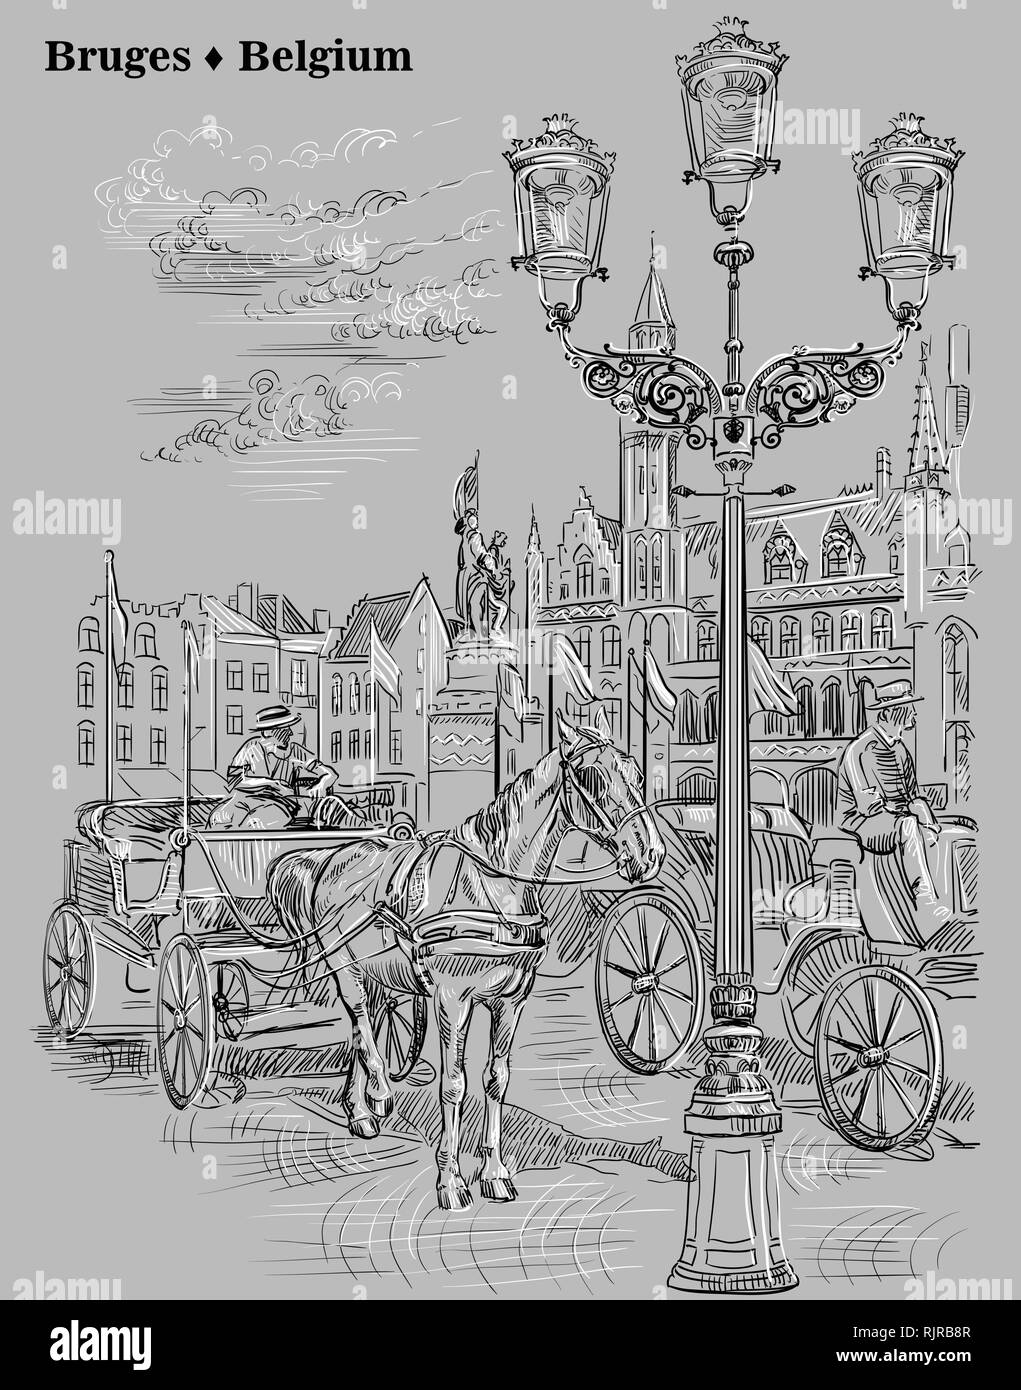 Vista sul Grote Markt square con i cavalli, carri e lanterne in città medievale Bruges, Belgio. Vettore di disegno a mano illustrazione in bianco e nero c Illustrazione Vettoriale